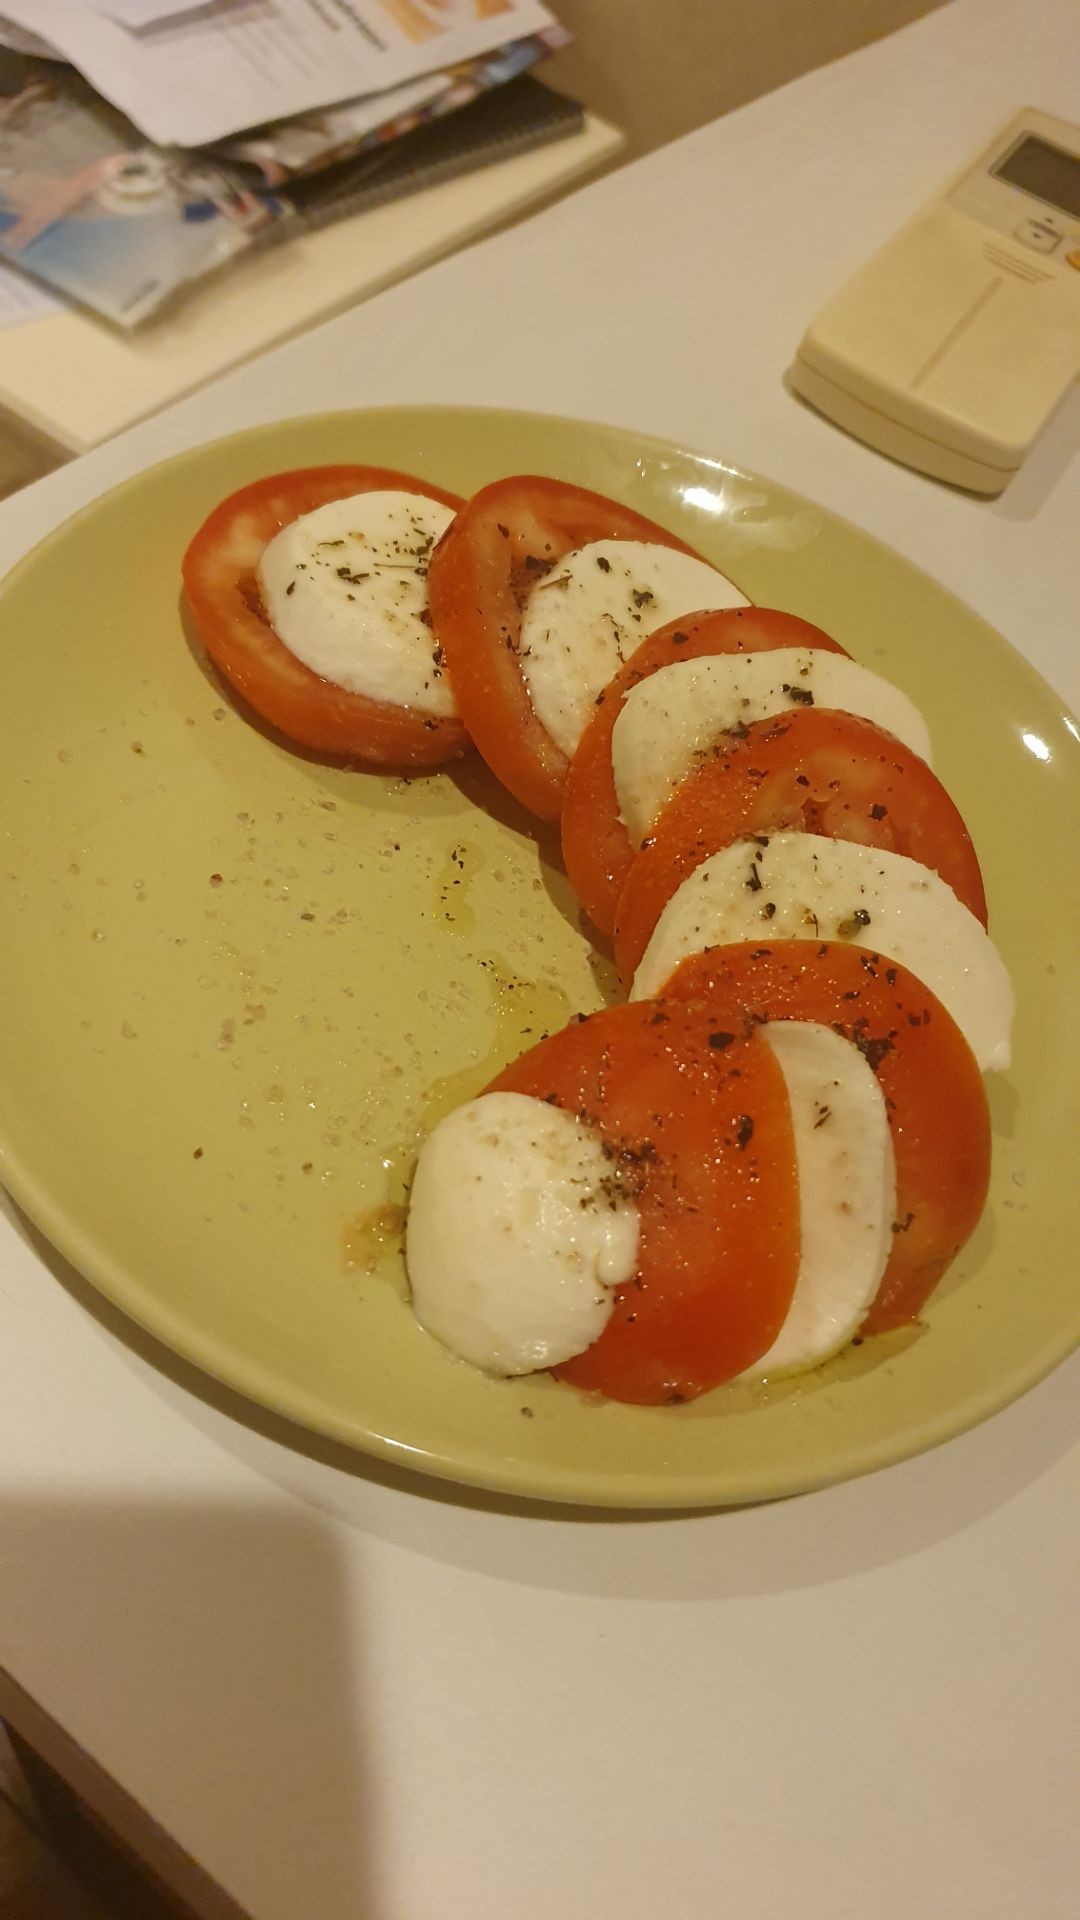 Tomato mozzarella Salad with basil